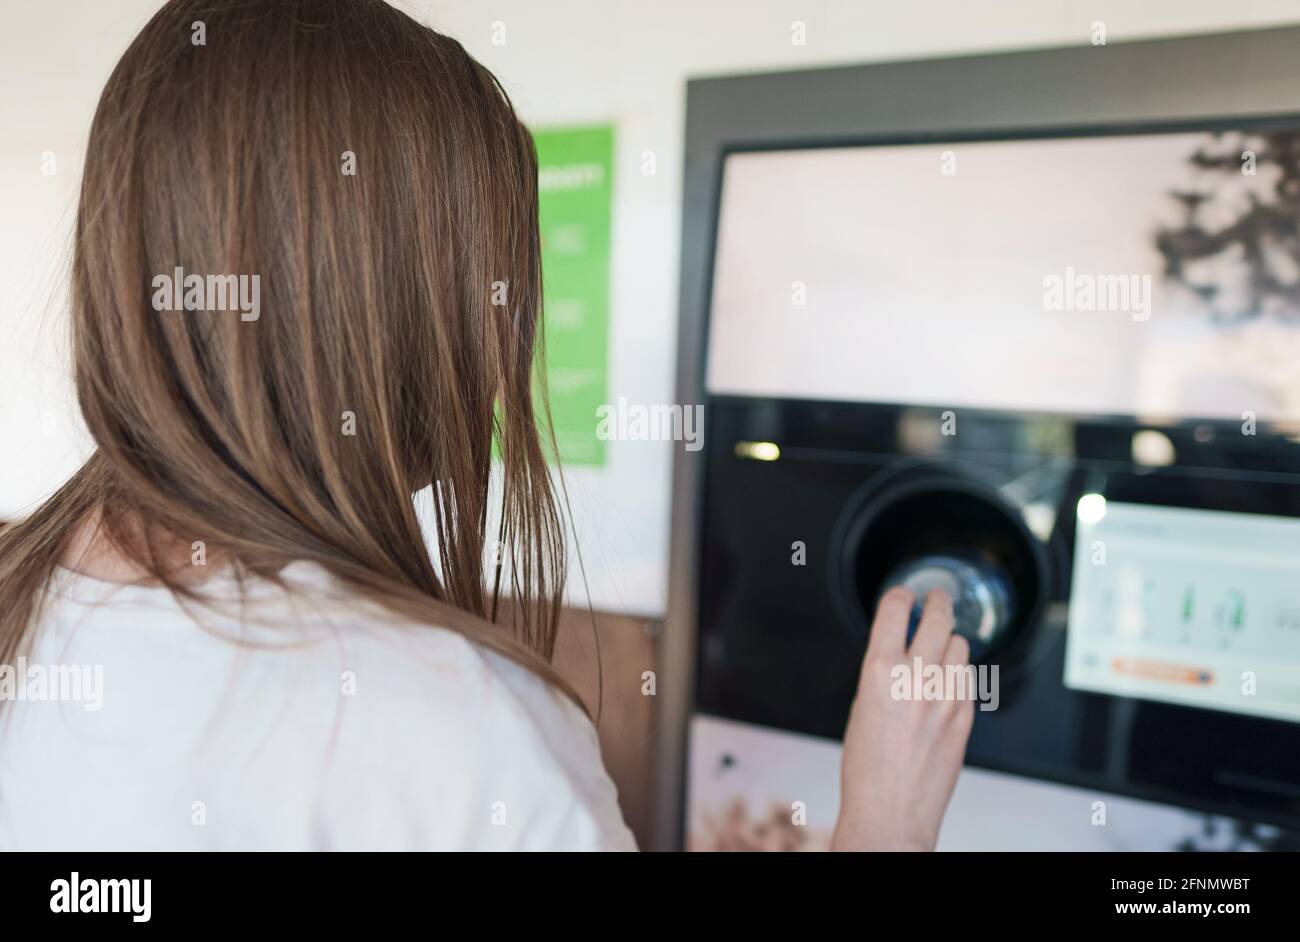 Donna mette il flacone in una macchina automatica per il riciclaggio delle bottiglie. Macchina per il riciclaggio con distributori automatici a inversione. Foto Stock